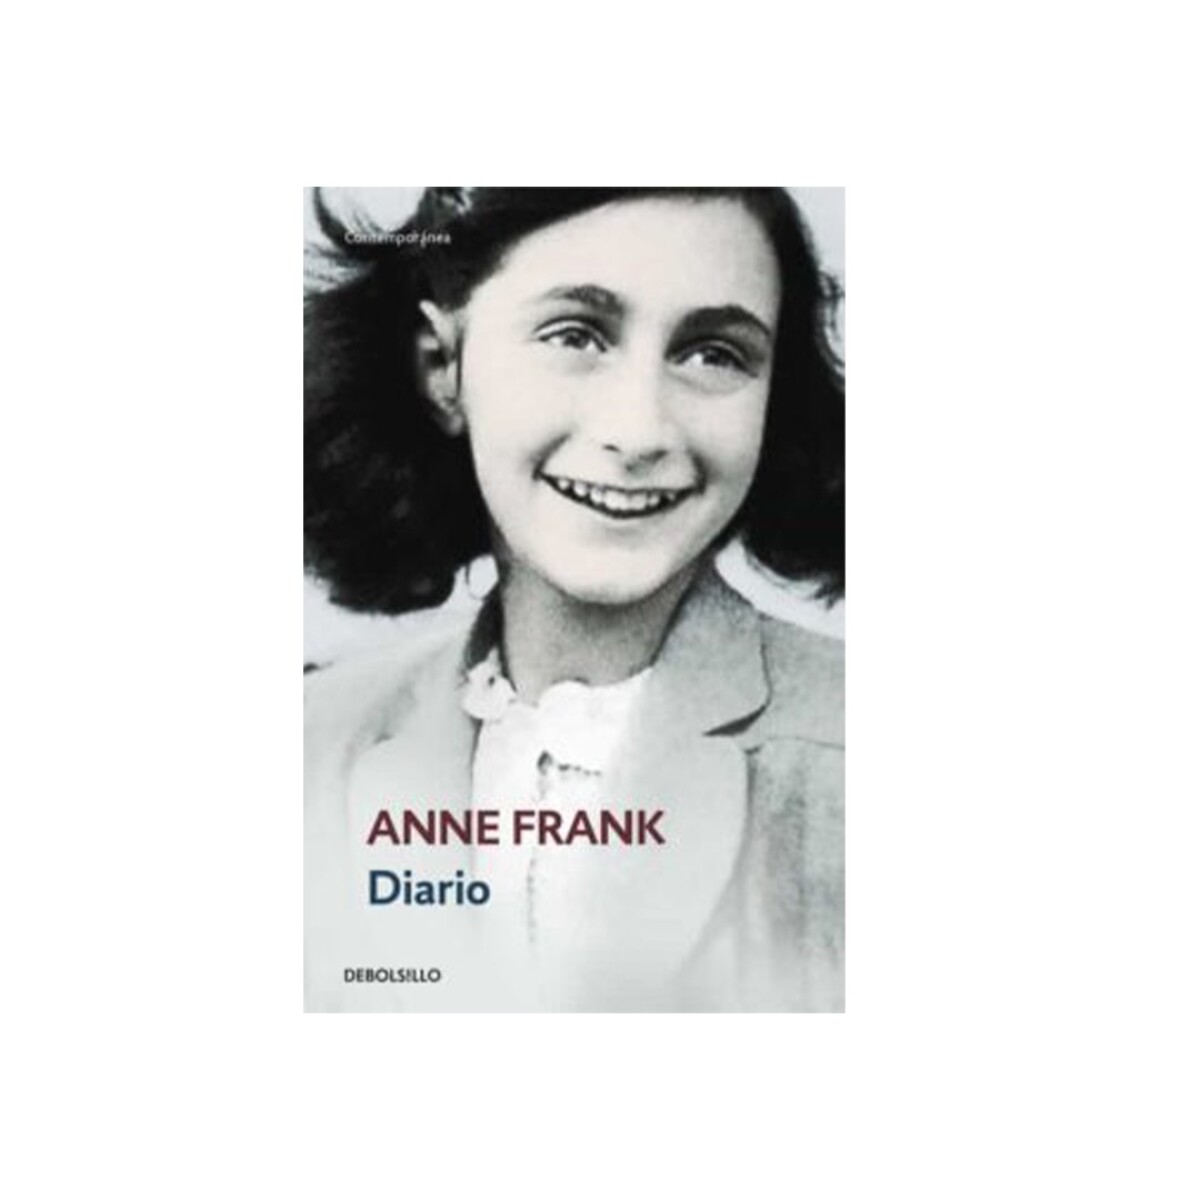 Libro Diario de Anne Frank - 001 